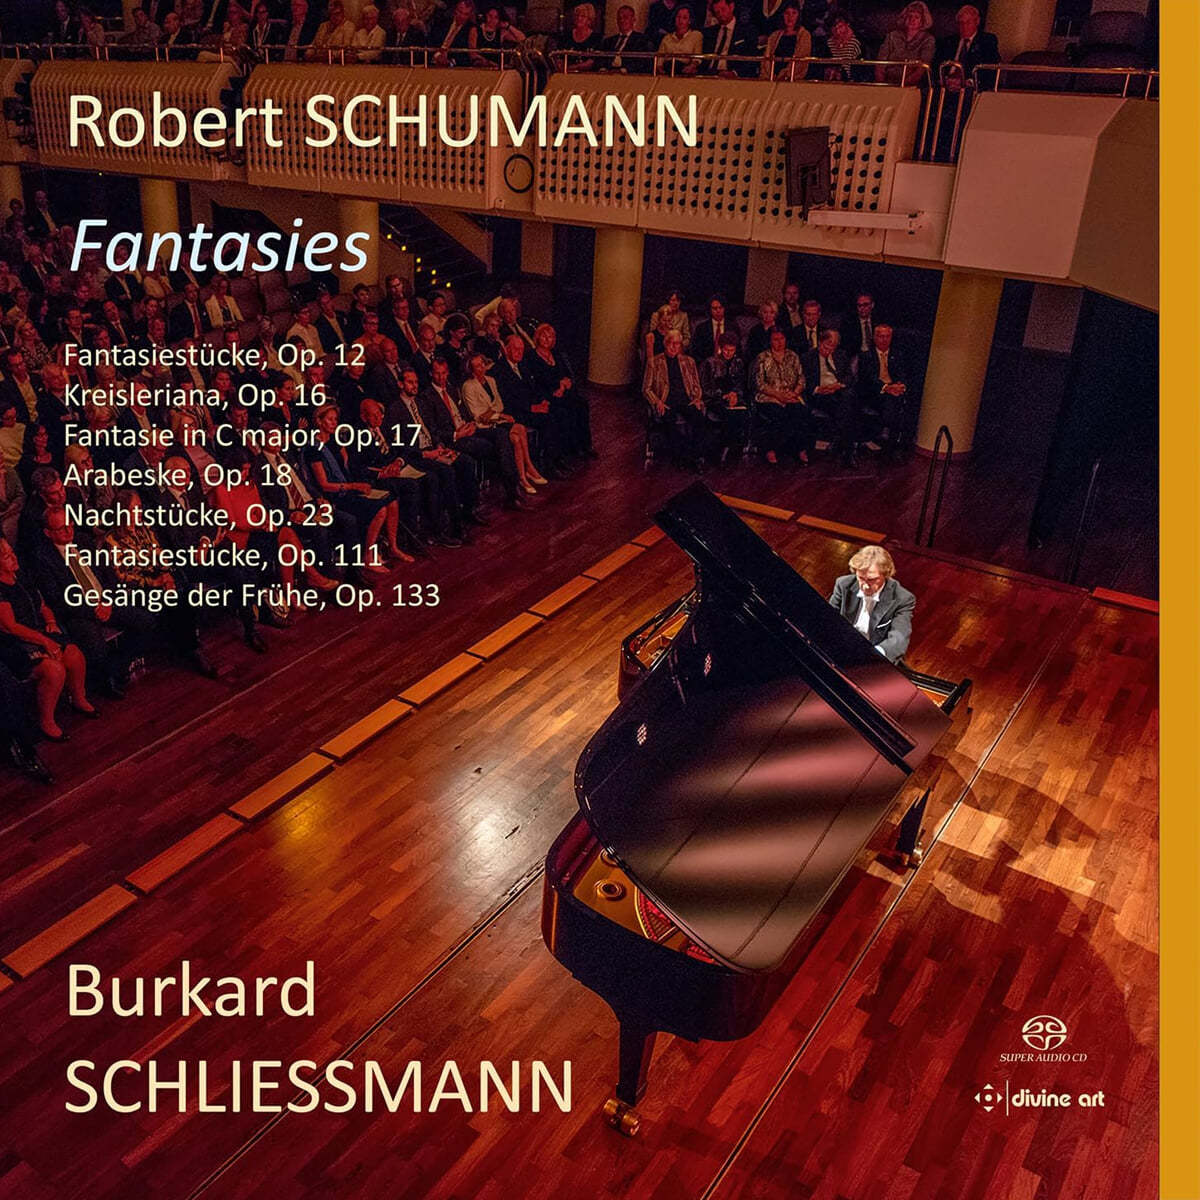 Burkard Schliessmann 슈만: 환상곡 (Schumann: Fantasies)